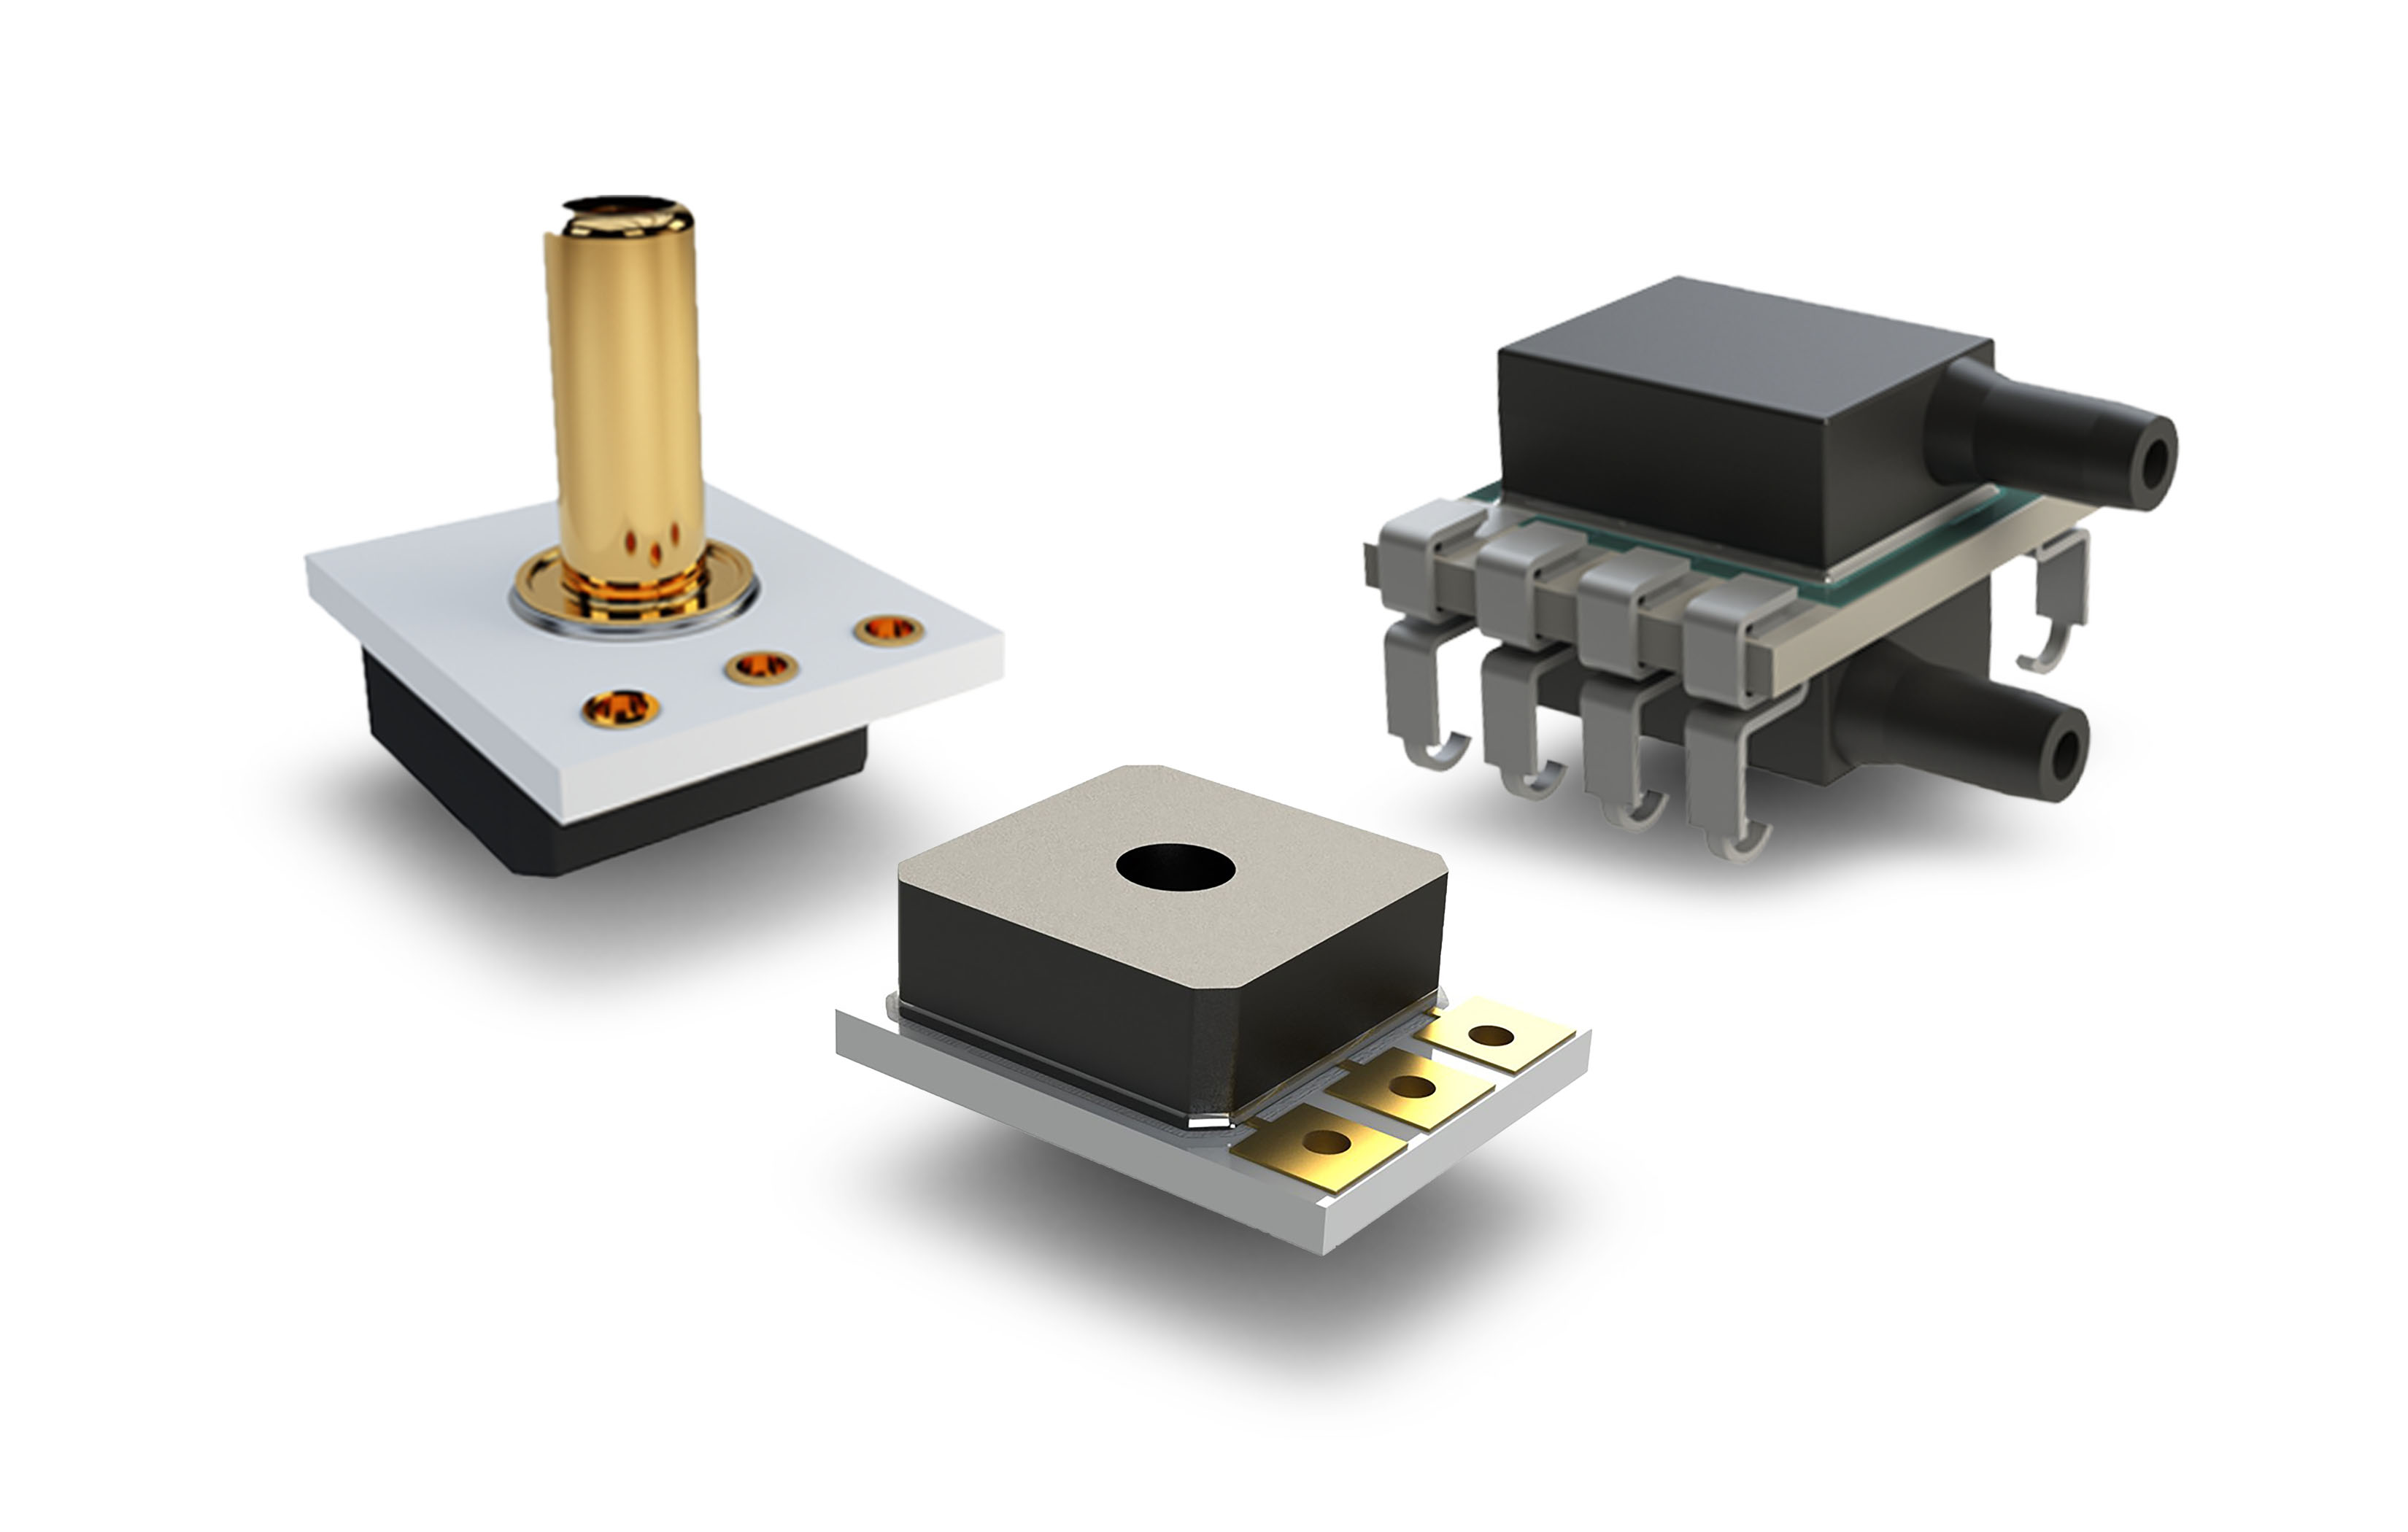 Line of Environmental Sensors Based on MEMS Technology